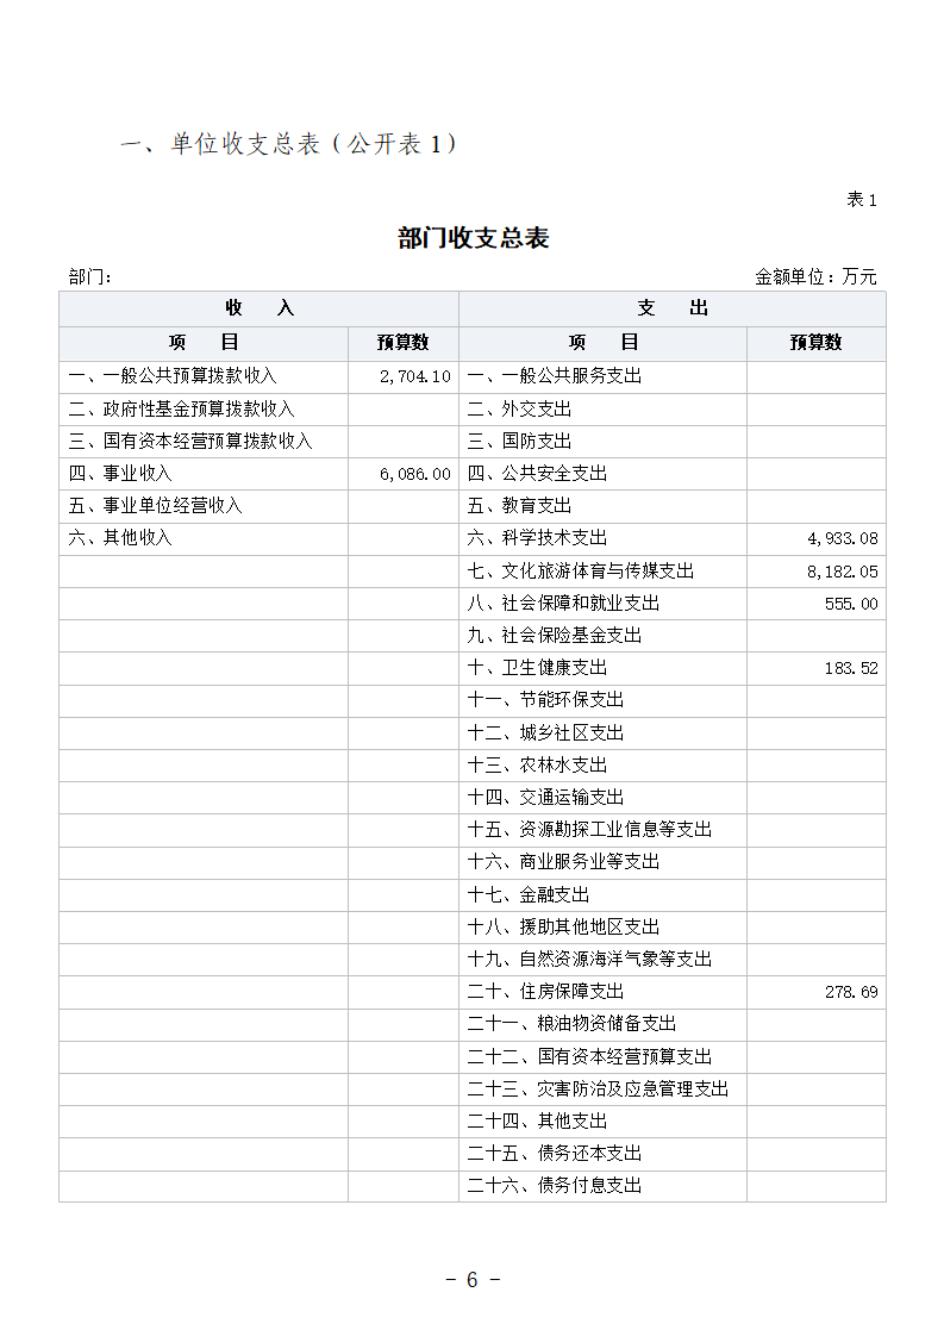 省考古院2024年四川省省级单位预算公开模板(3.14)_07.jpg